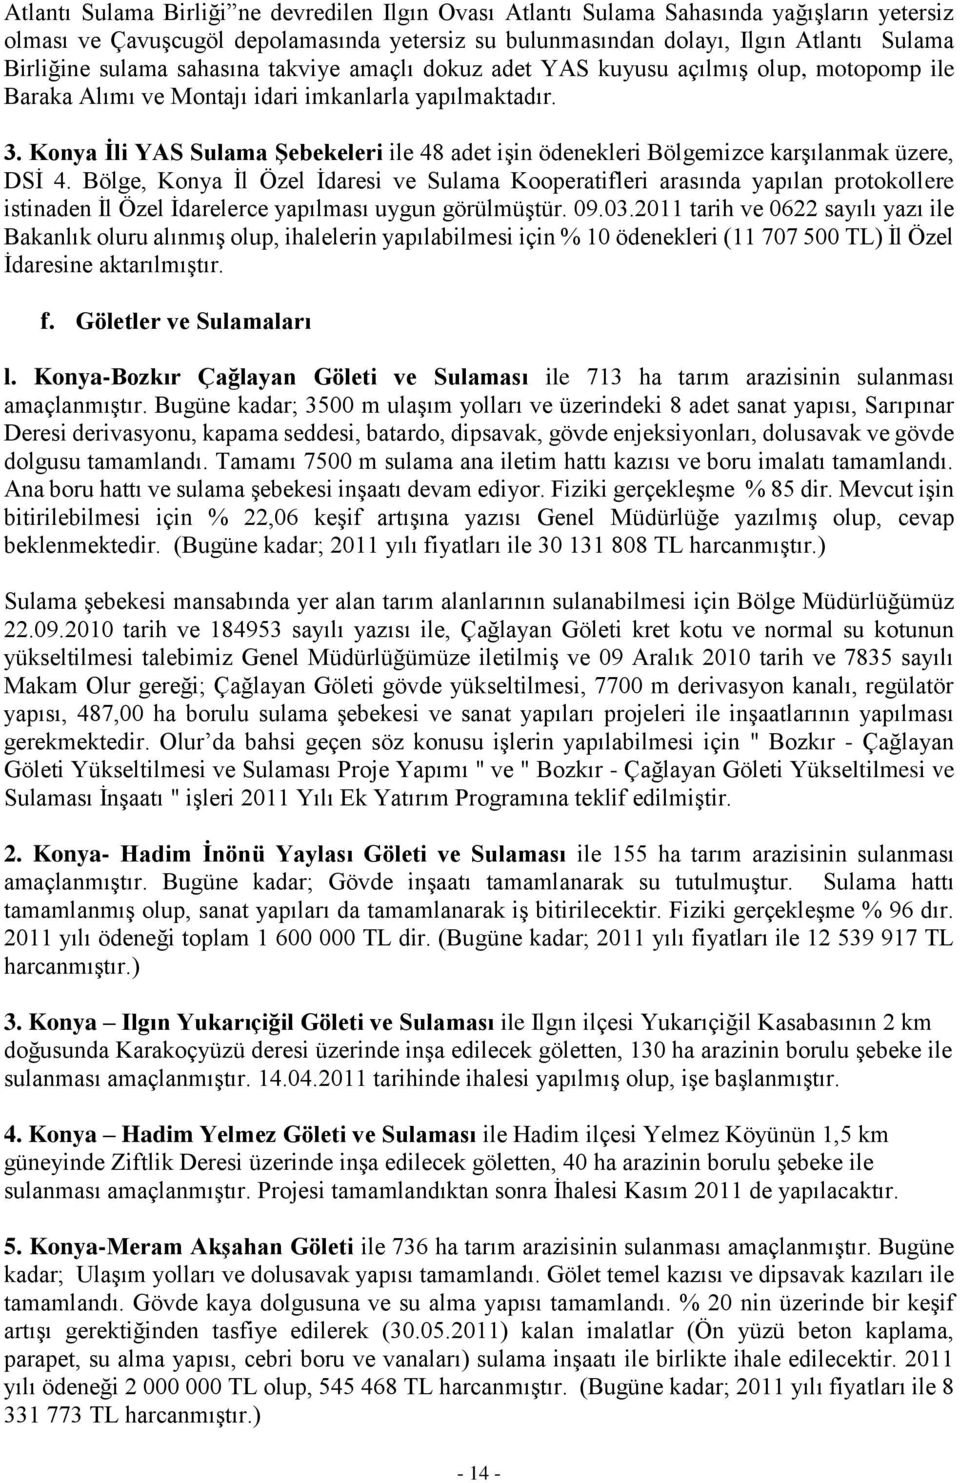 Konya Ġli YAS Sulama ġebekeleri ile 48 adet işin ödenekleri Bölgemizce karşılanmak üzere, DSİ 4.